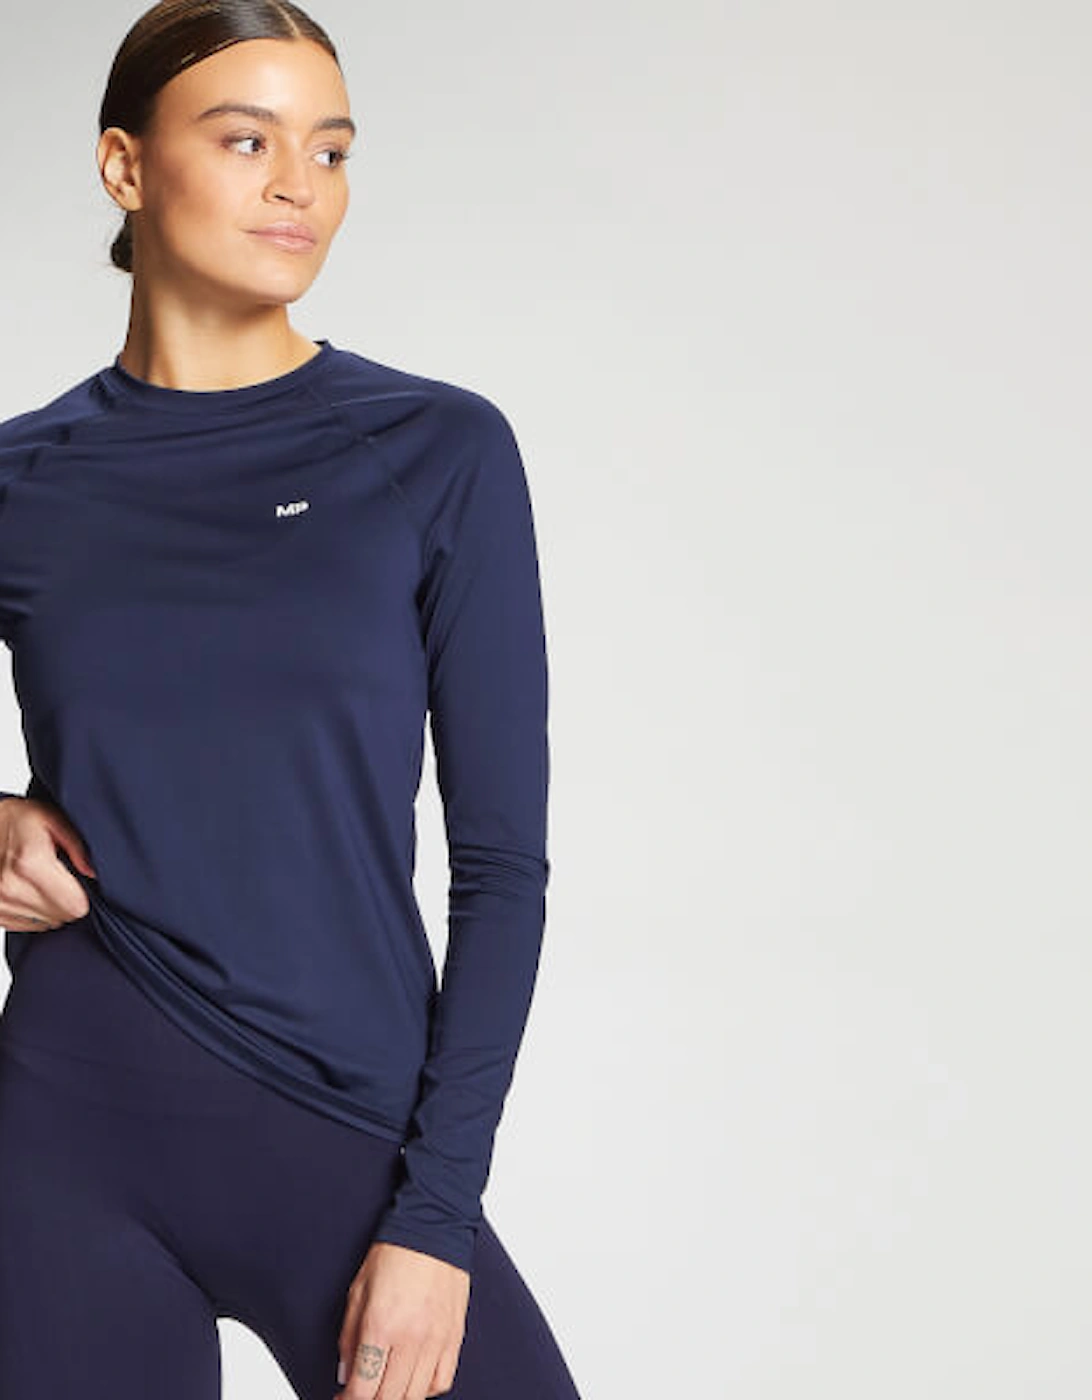 Women's Training Slim Fit Long Sleeve Top - True Blue